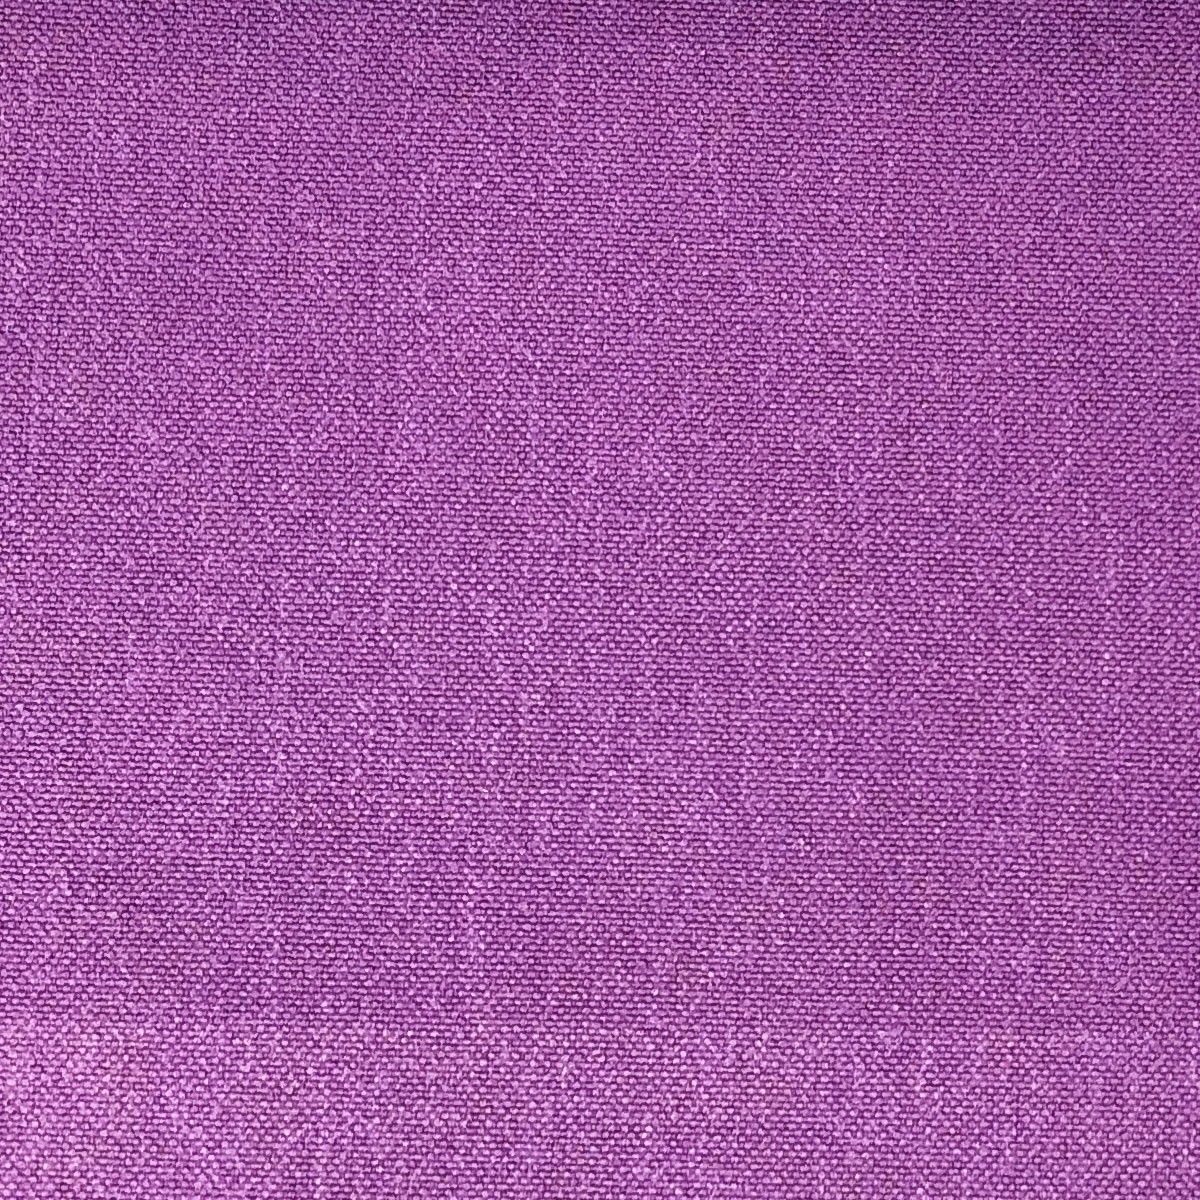 Glinara Mulberry Fabric by Chatham Glyn